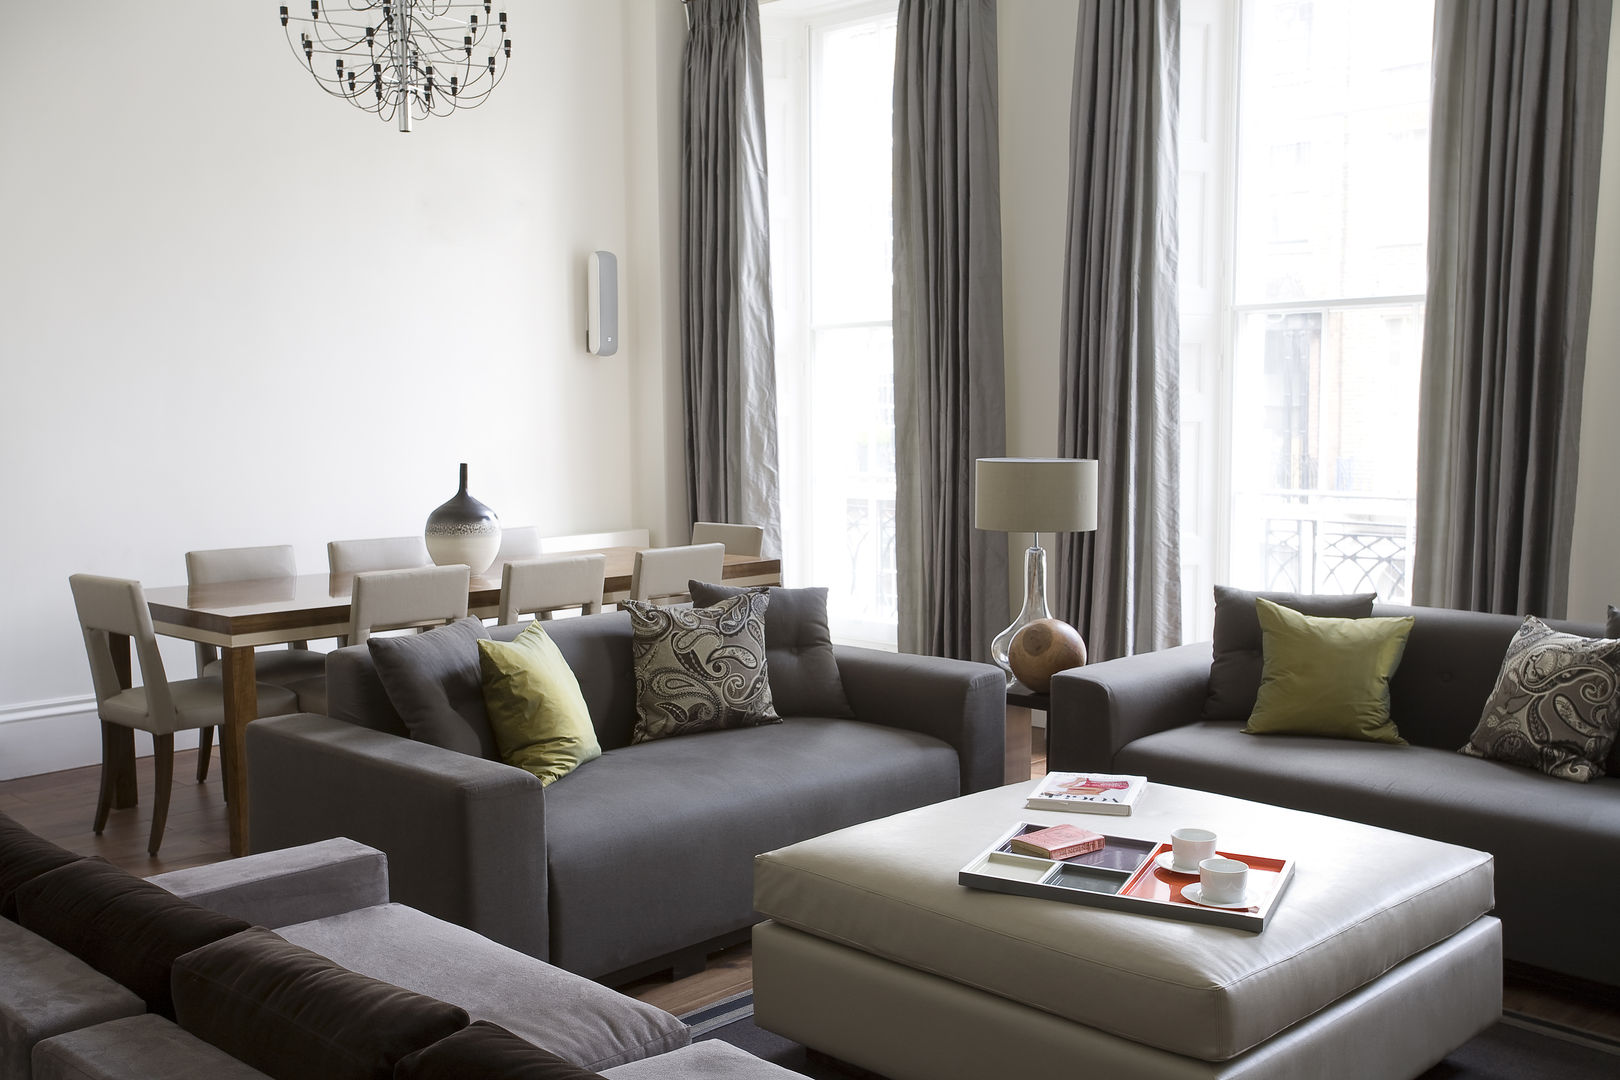 North London, LEIVARS LEIVARS Modern living room